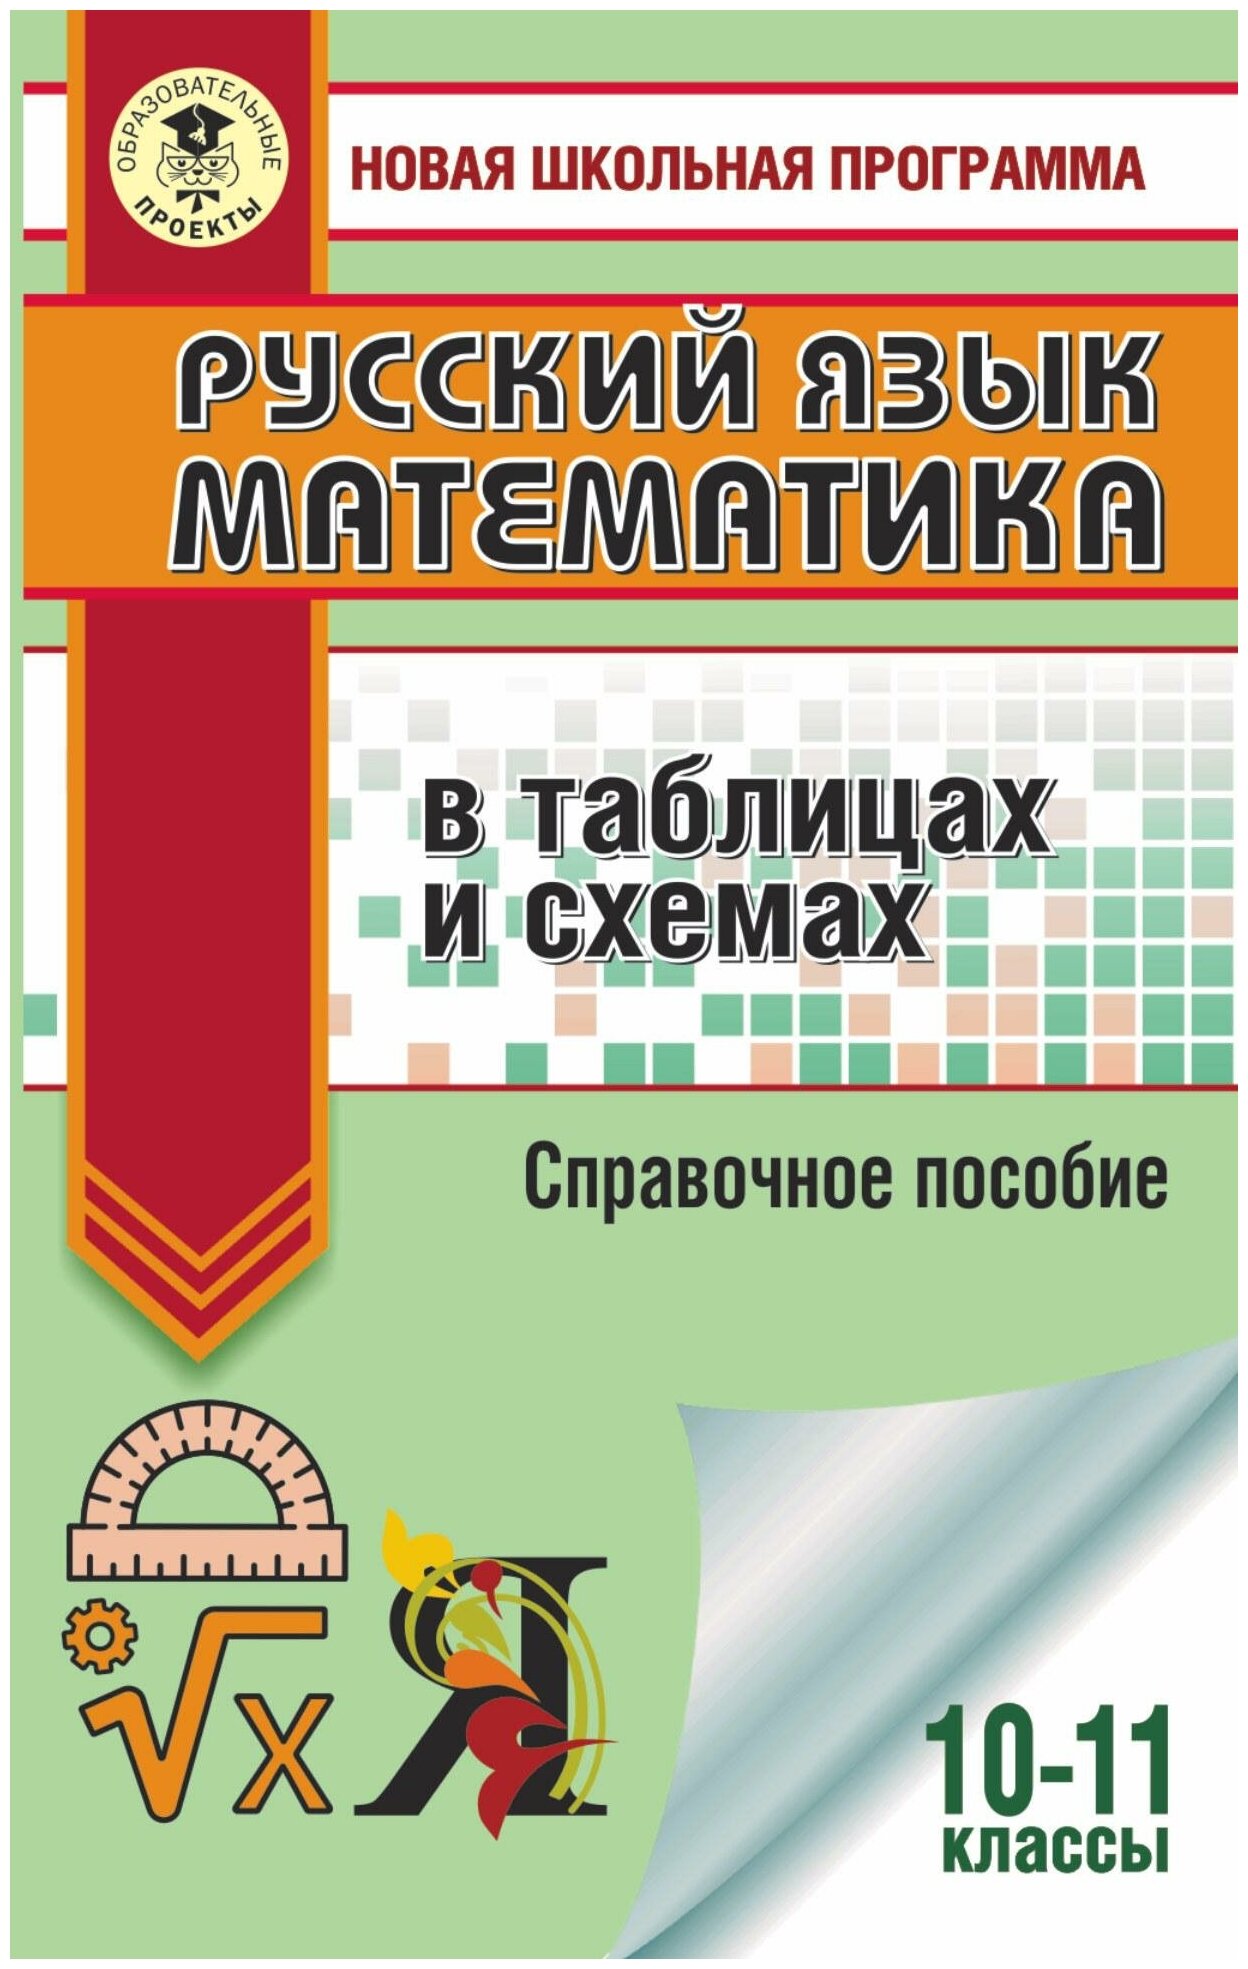 ЕГЭ. Русский язык. Математика в таблицах и схемах для подготовки к ЕГЭ - фото №2